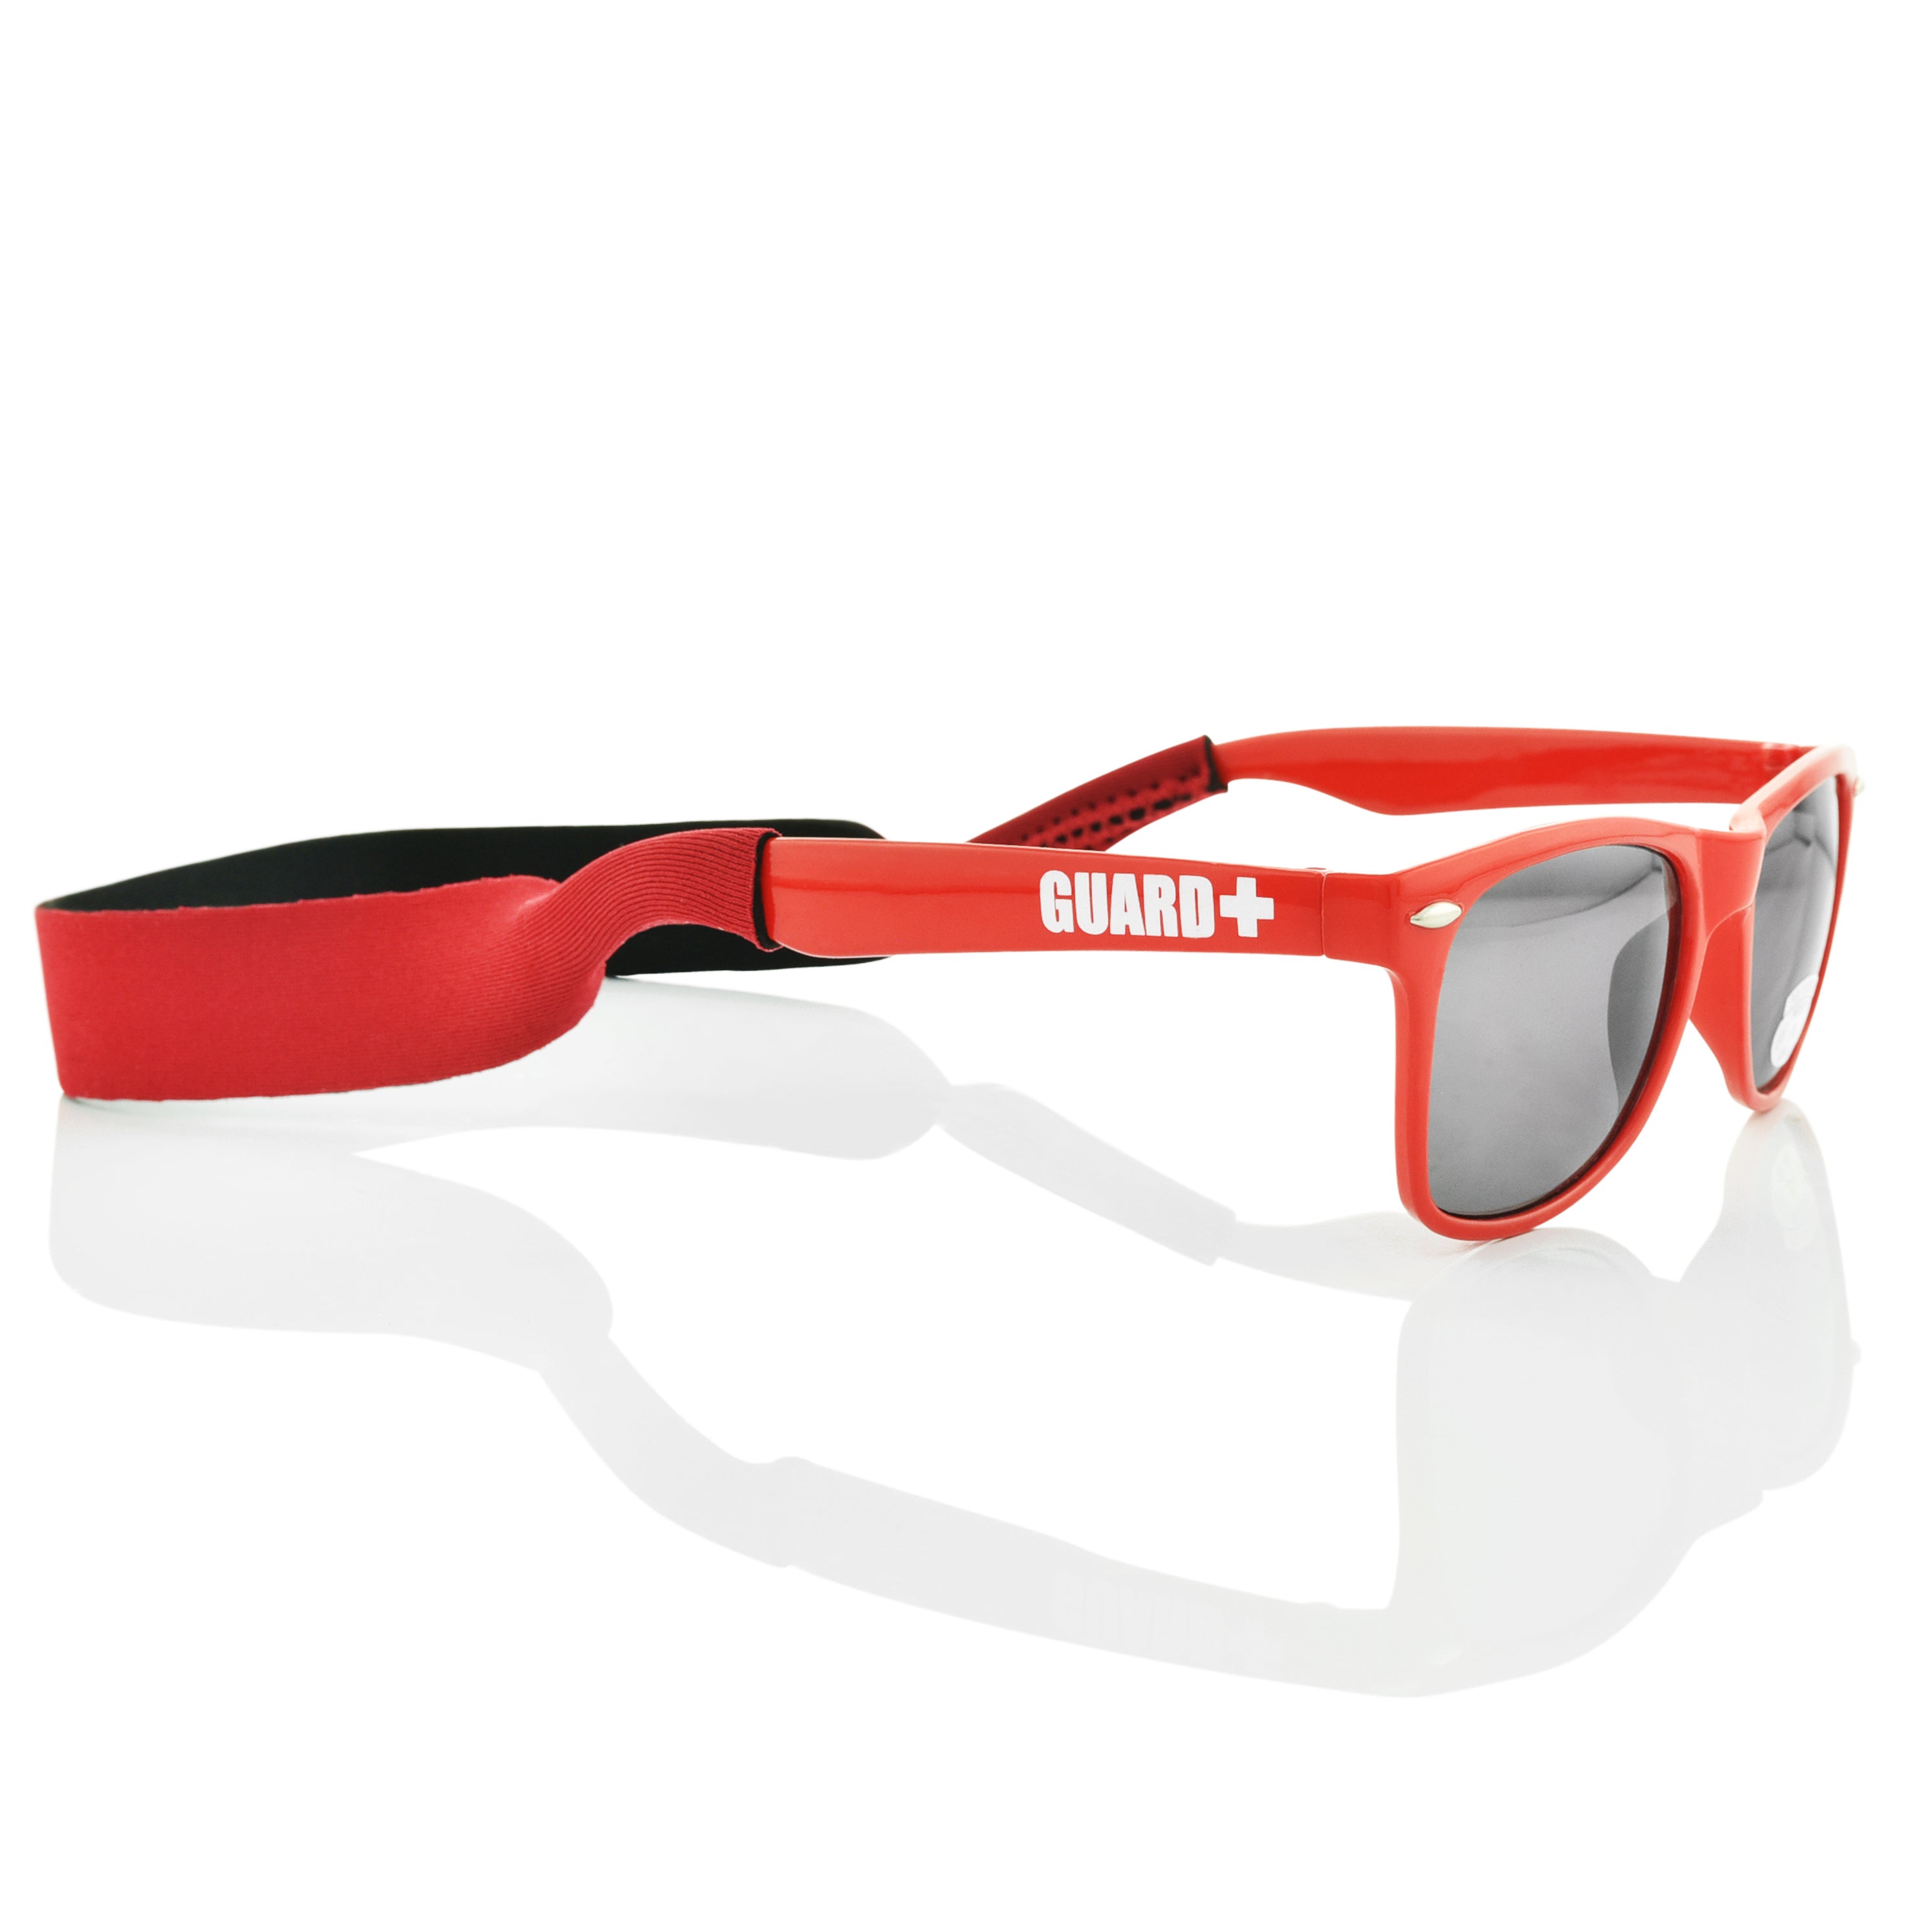 Lifeguard Eyewear Retainer – BLARIX